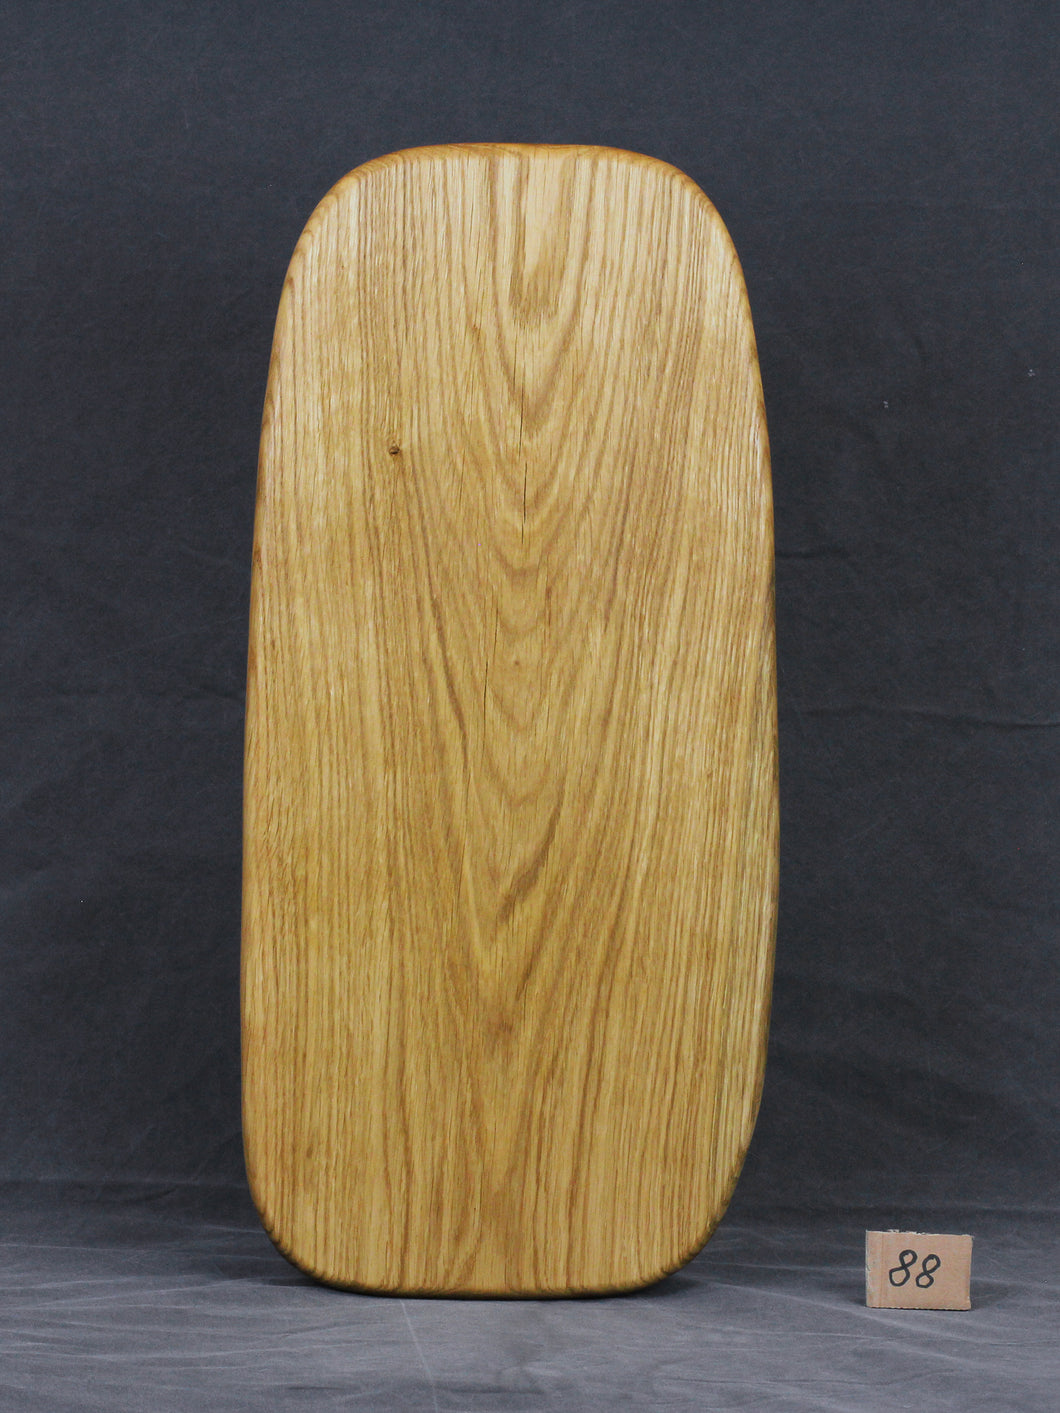 Brotzeitbrett, Servierbrett, Schneidebrett, Cuttingboard, Charcuterie Board. No.88 - ca. 60 cm. Aus einem Stück Eiche - handgefertigt.